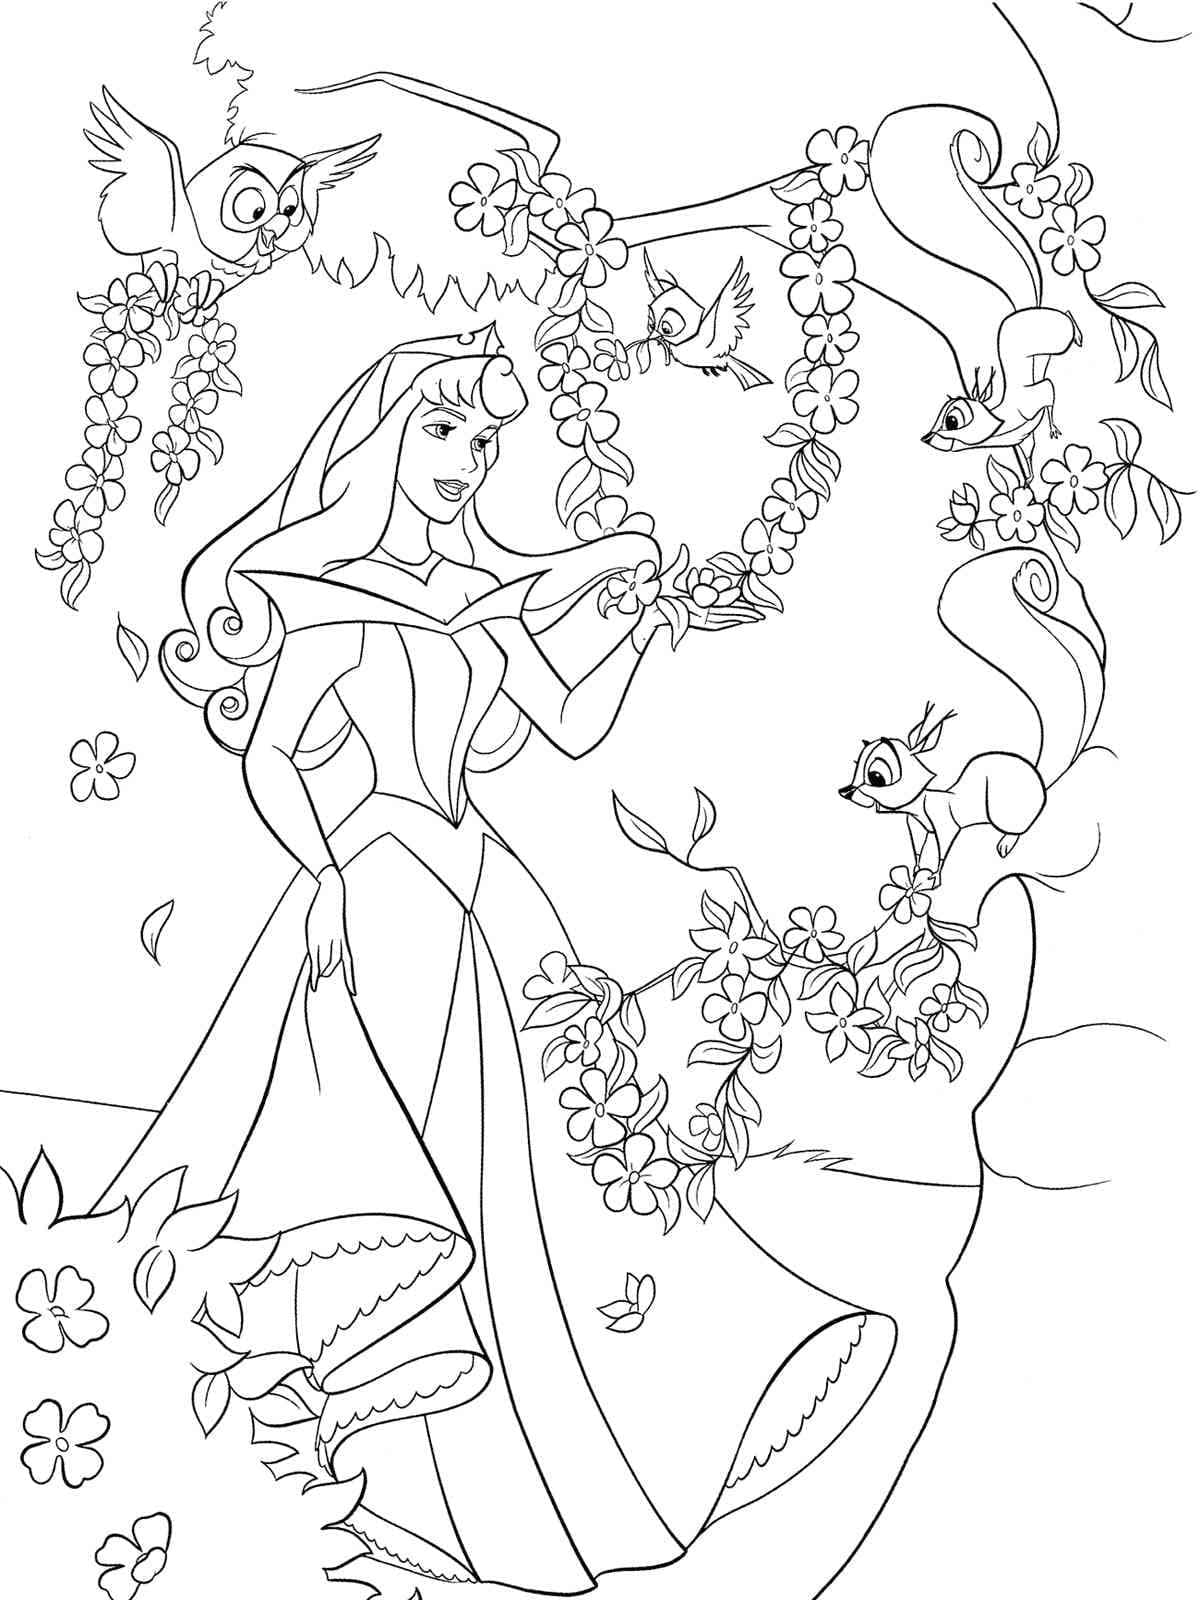 숲 속의 오로라 공주 coloring page